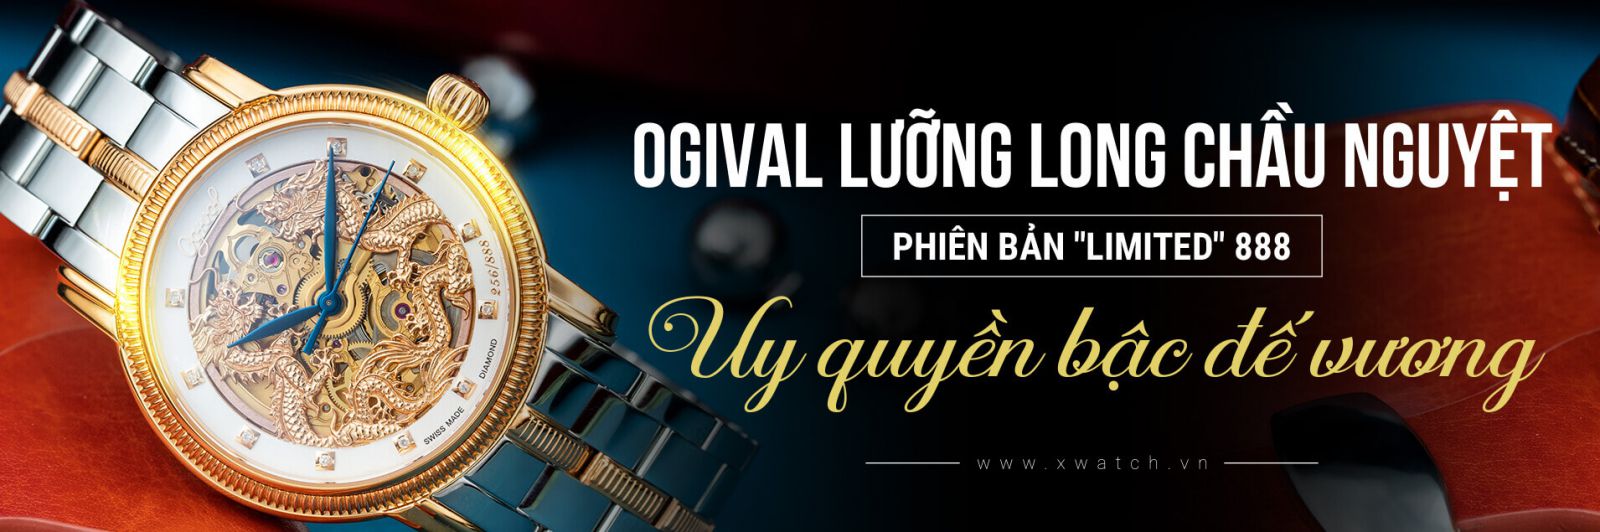 Ogival OG358.652AGSR-T Lưỡng Long Chầu Nguyệt